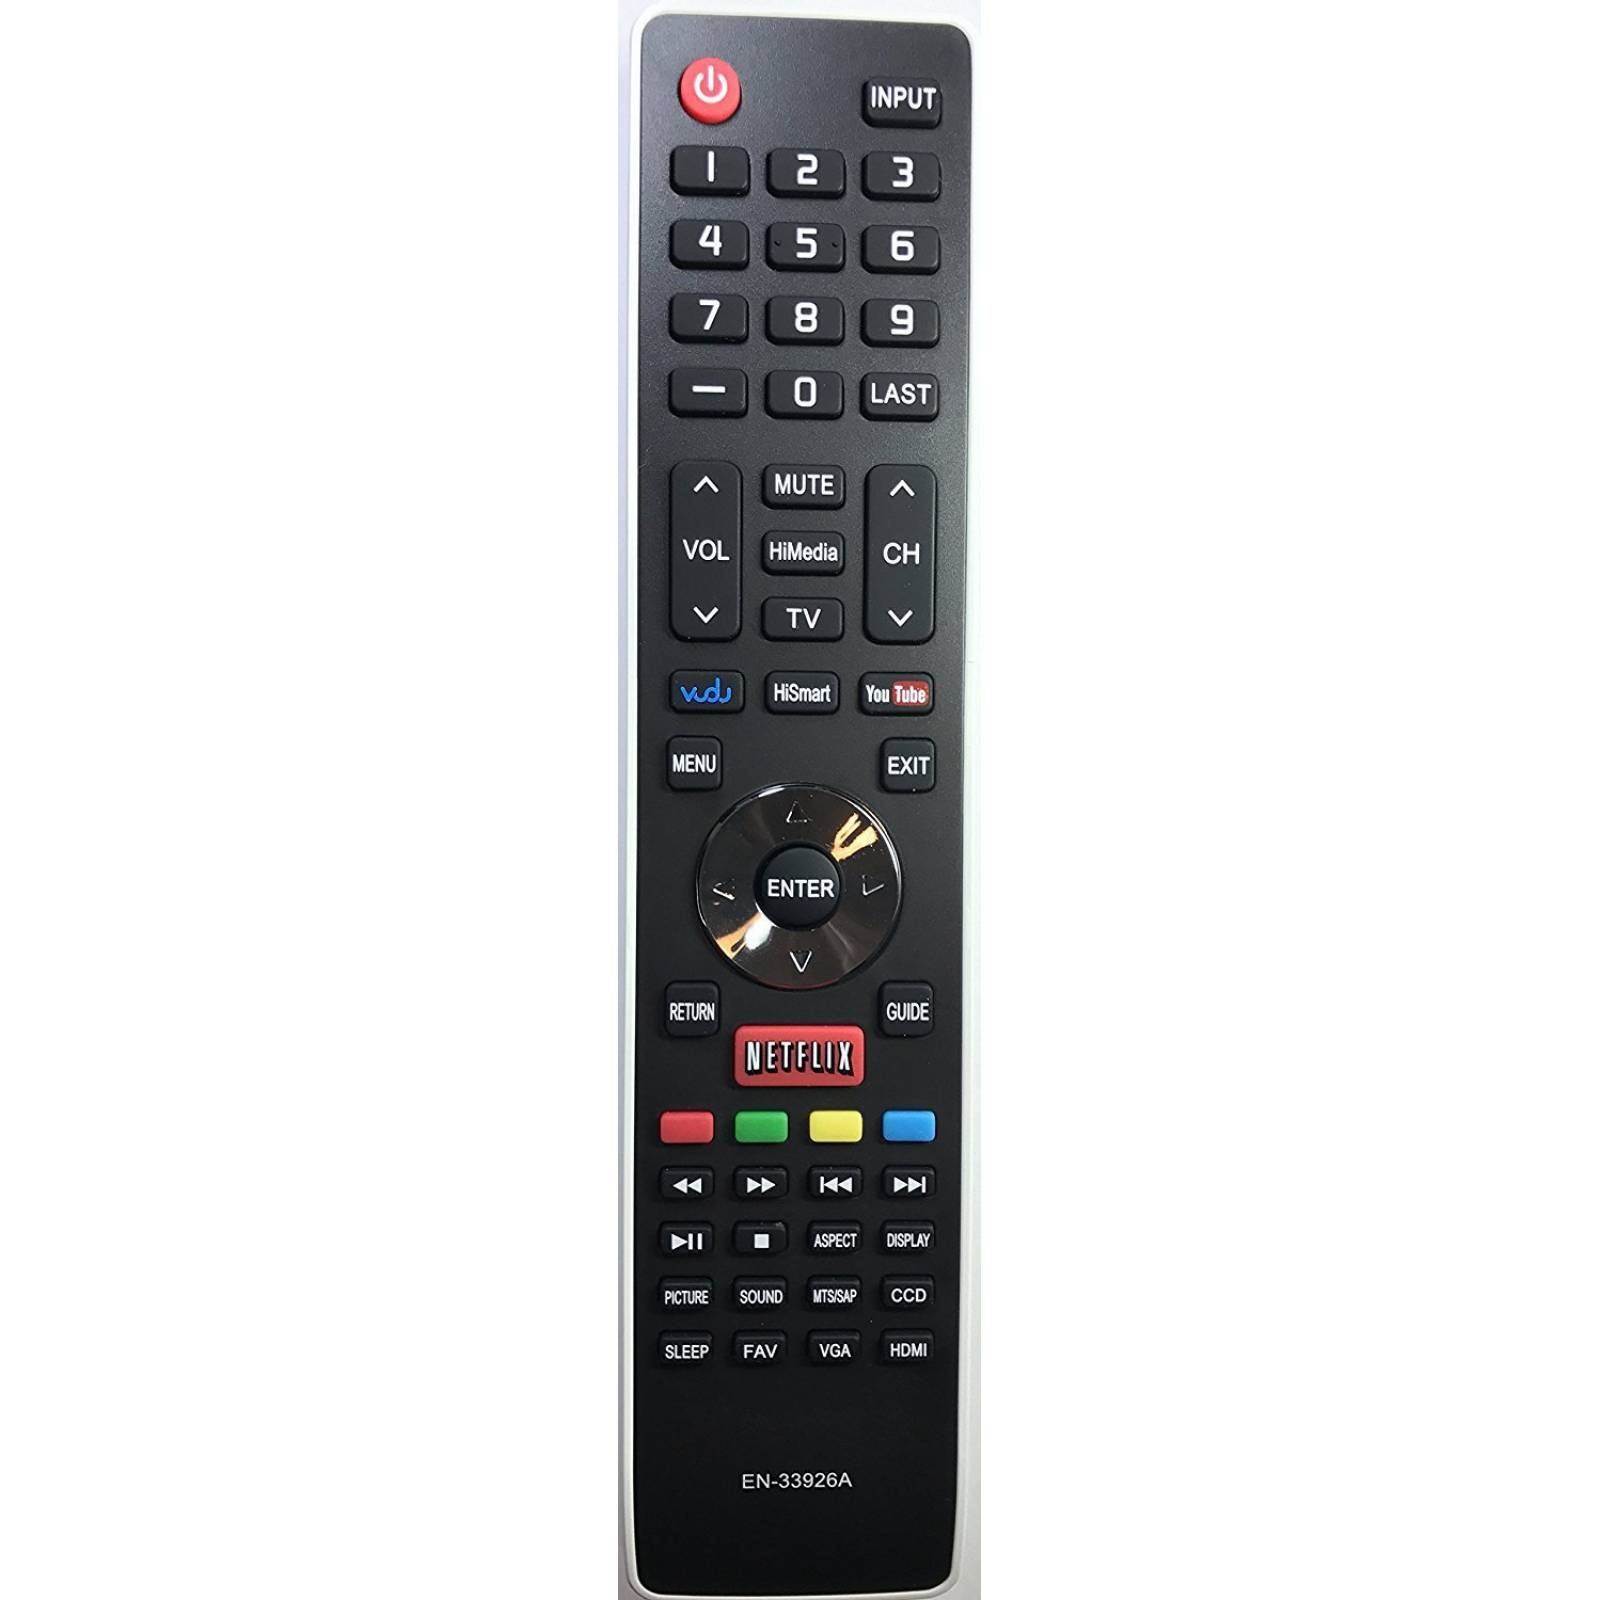 Smartby nuevo Hisense EN-33926A LED Smart TV mando distancia